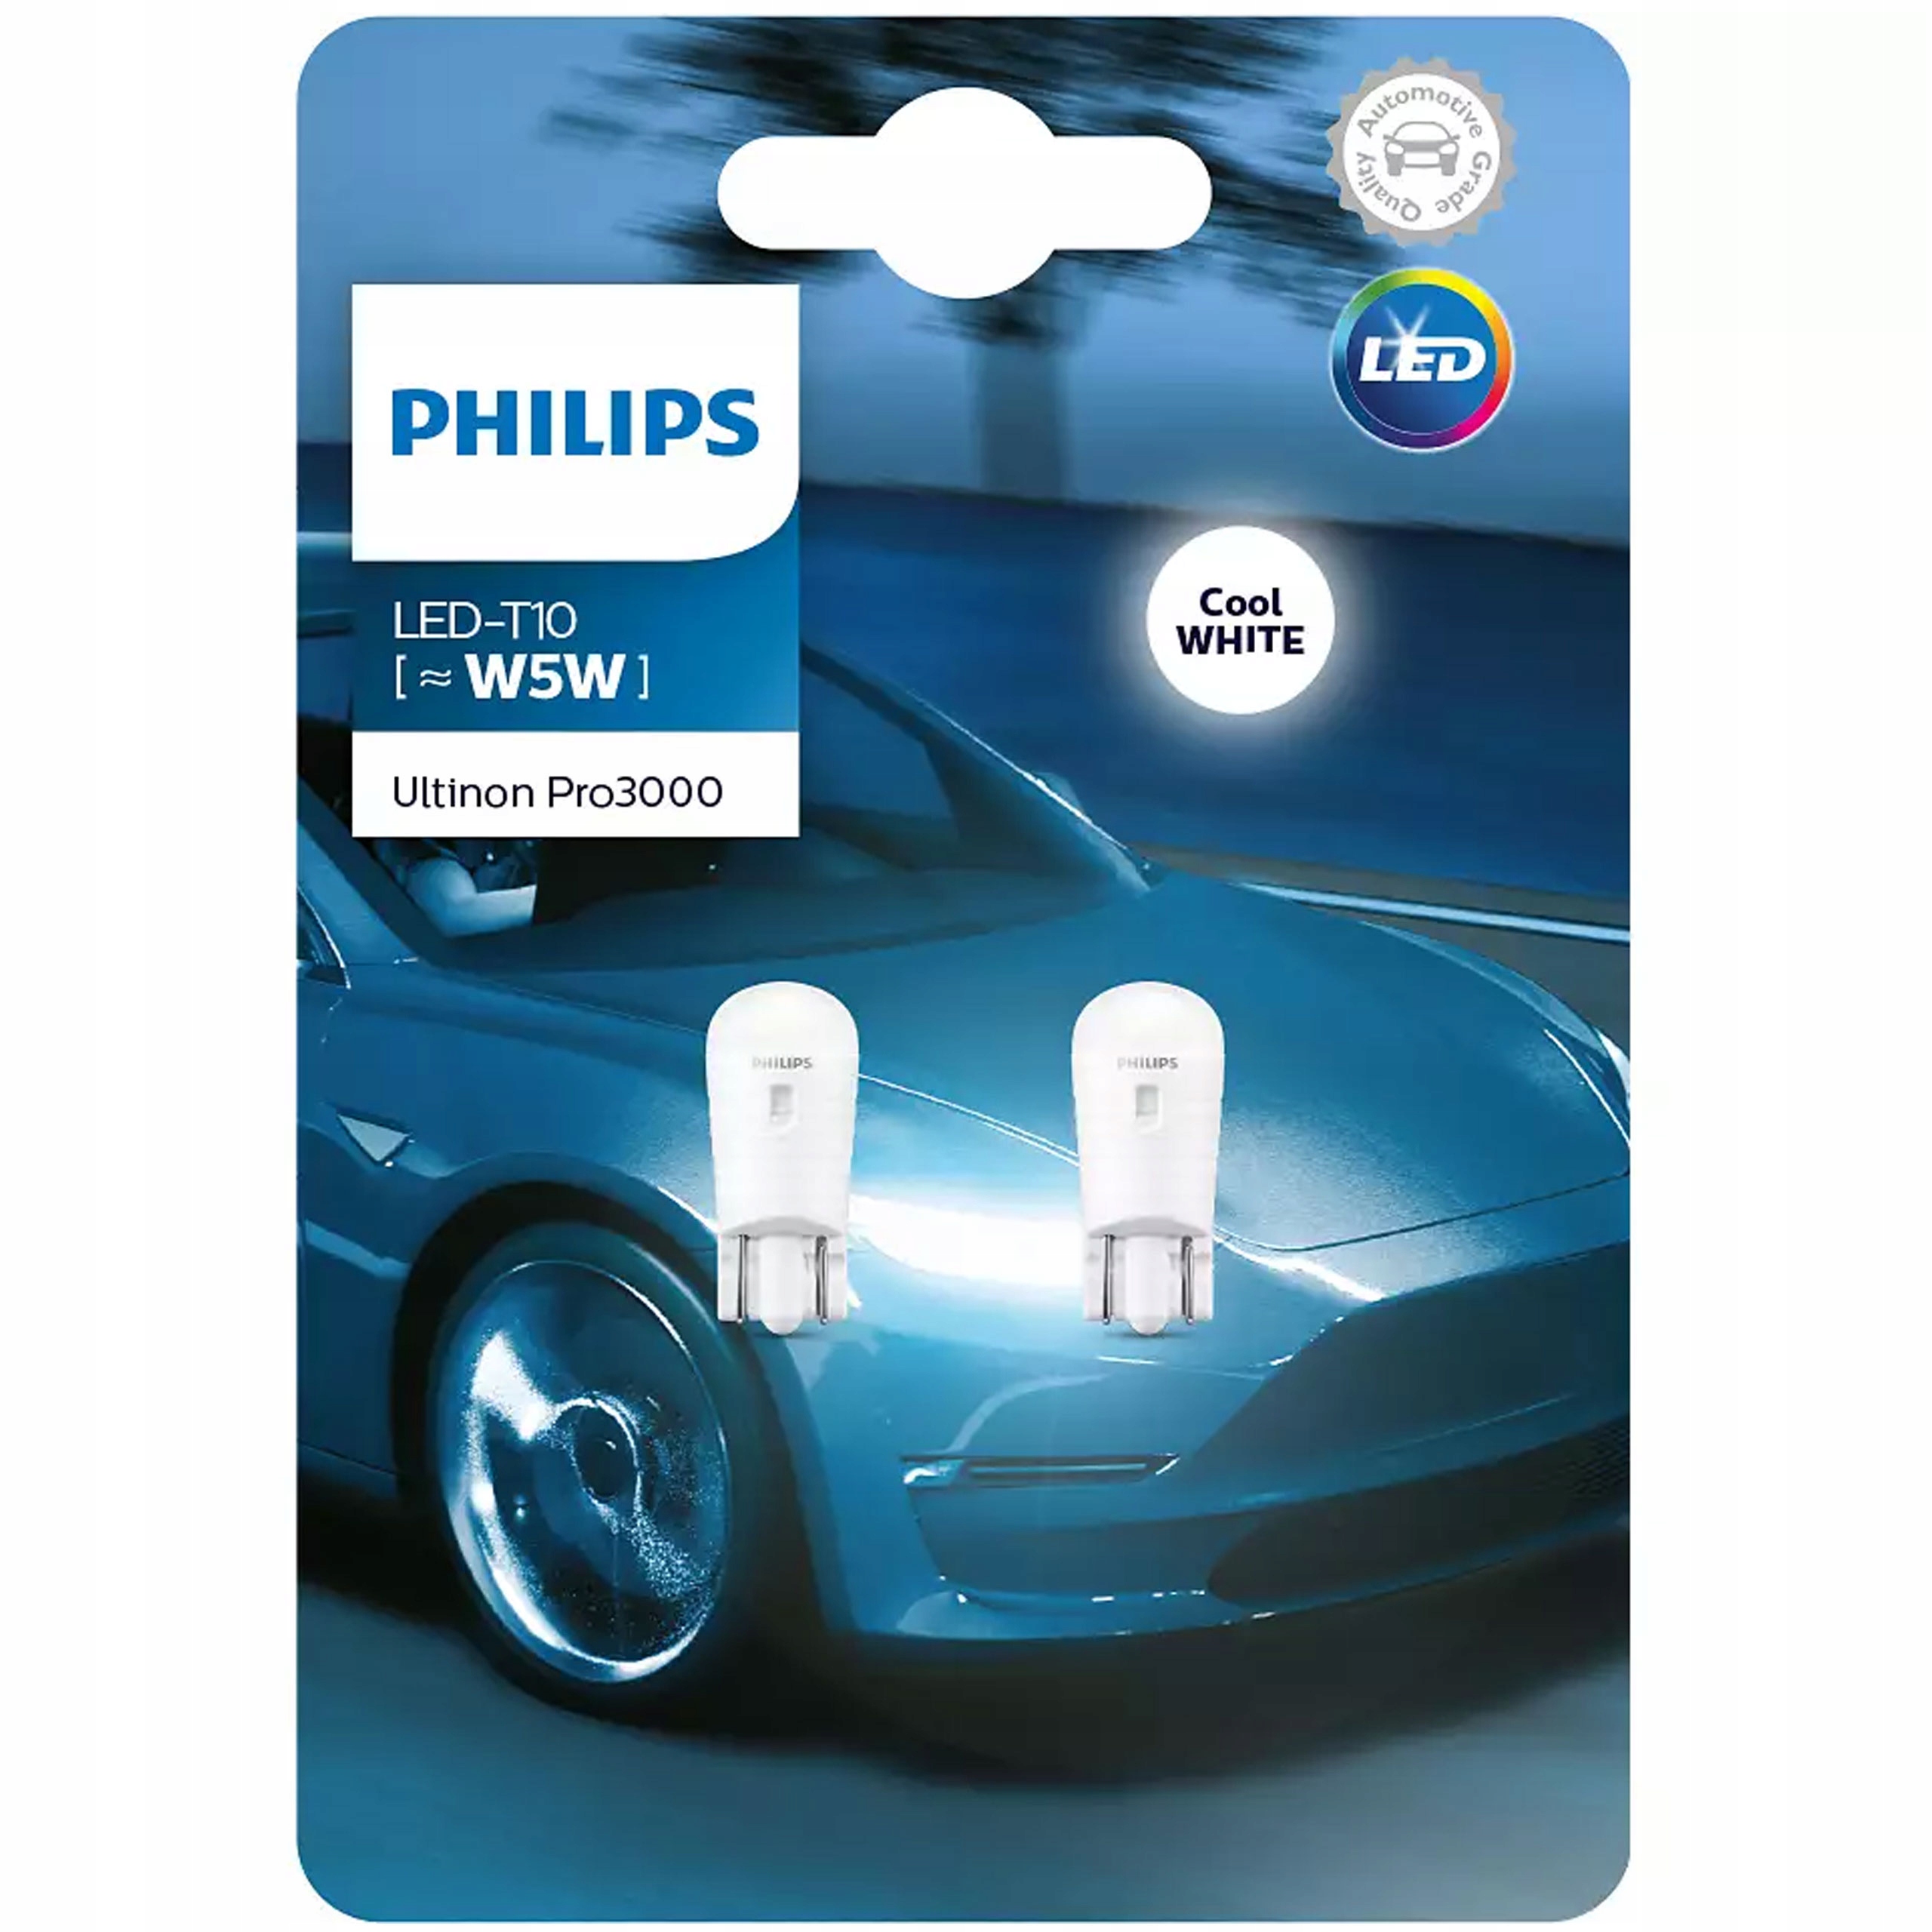 Филипс т. Набор автоламп led Philips 11961u30cwb2 w5w. Лампа t10 Philips (w5w) 12v Ultinon pro3000 6000k. W5w t10 Philips Ultinon led. Philips Ultinon pro3000 w5w.